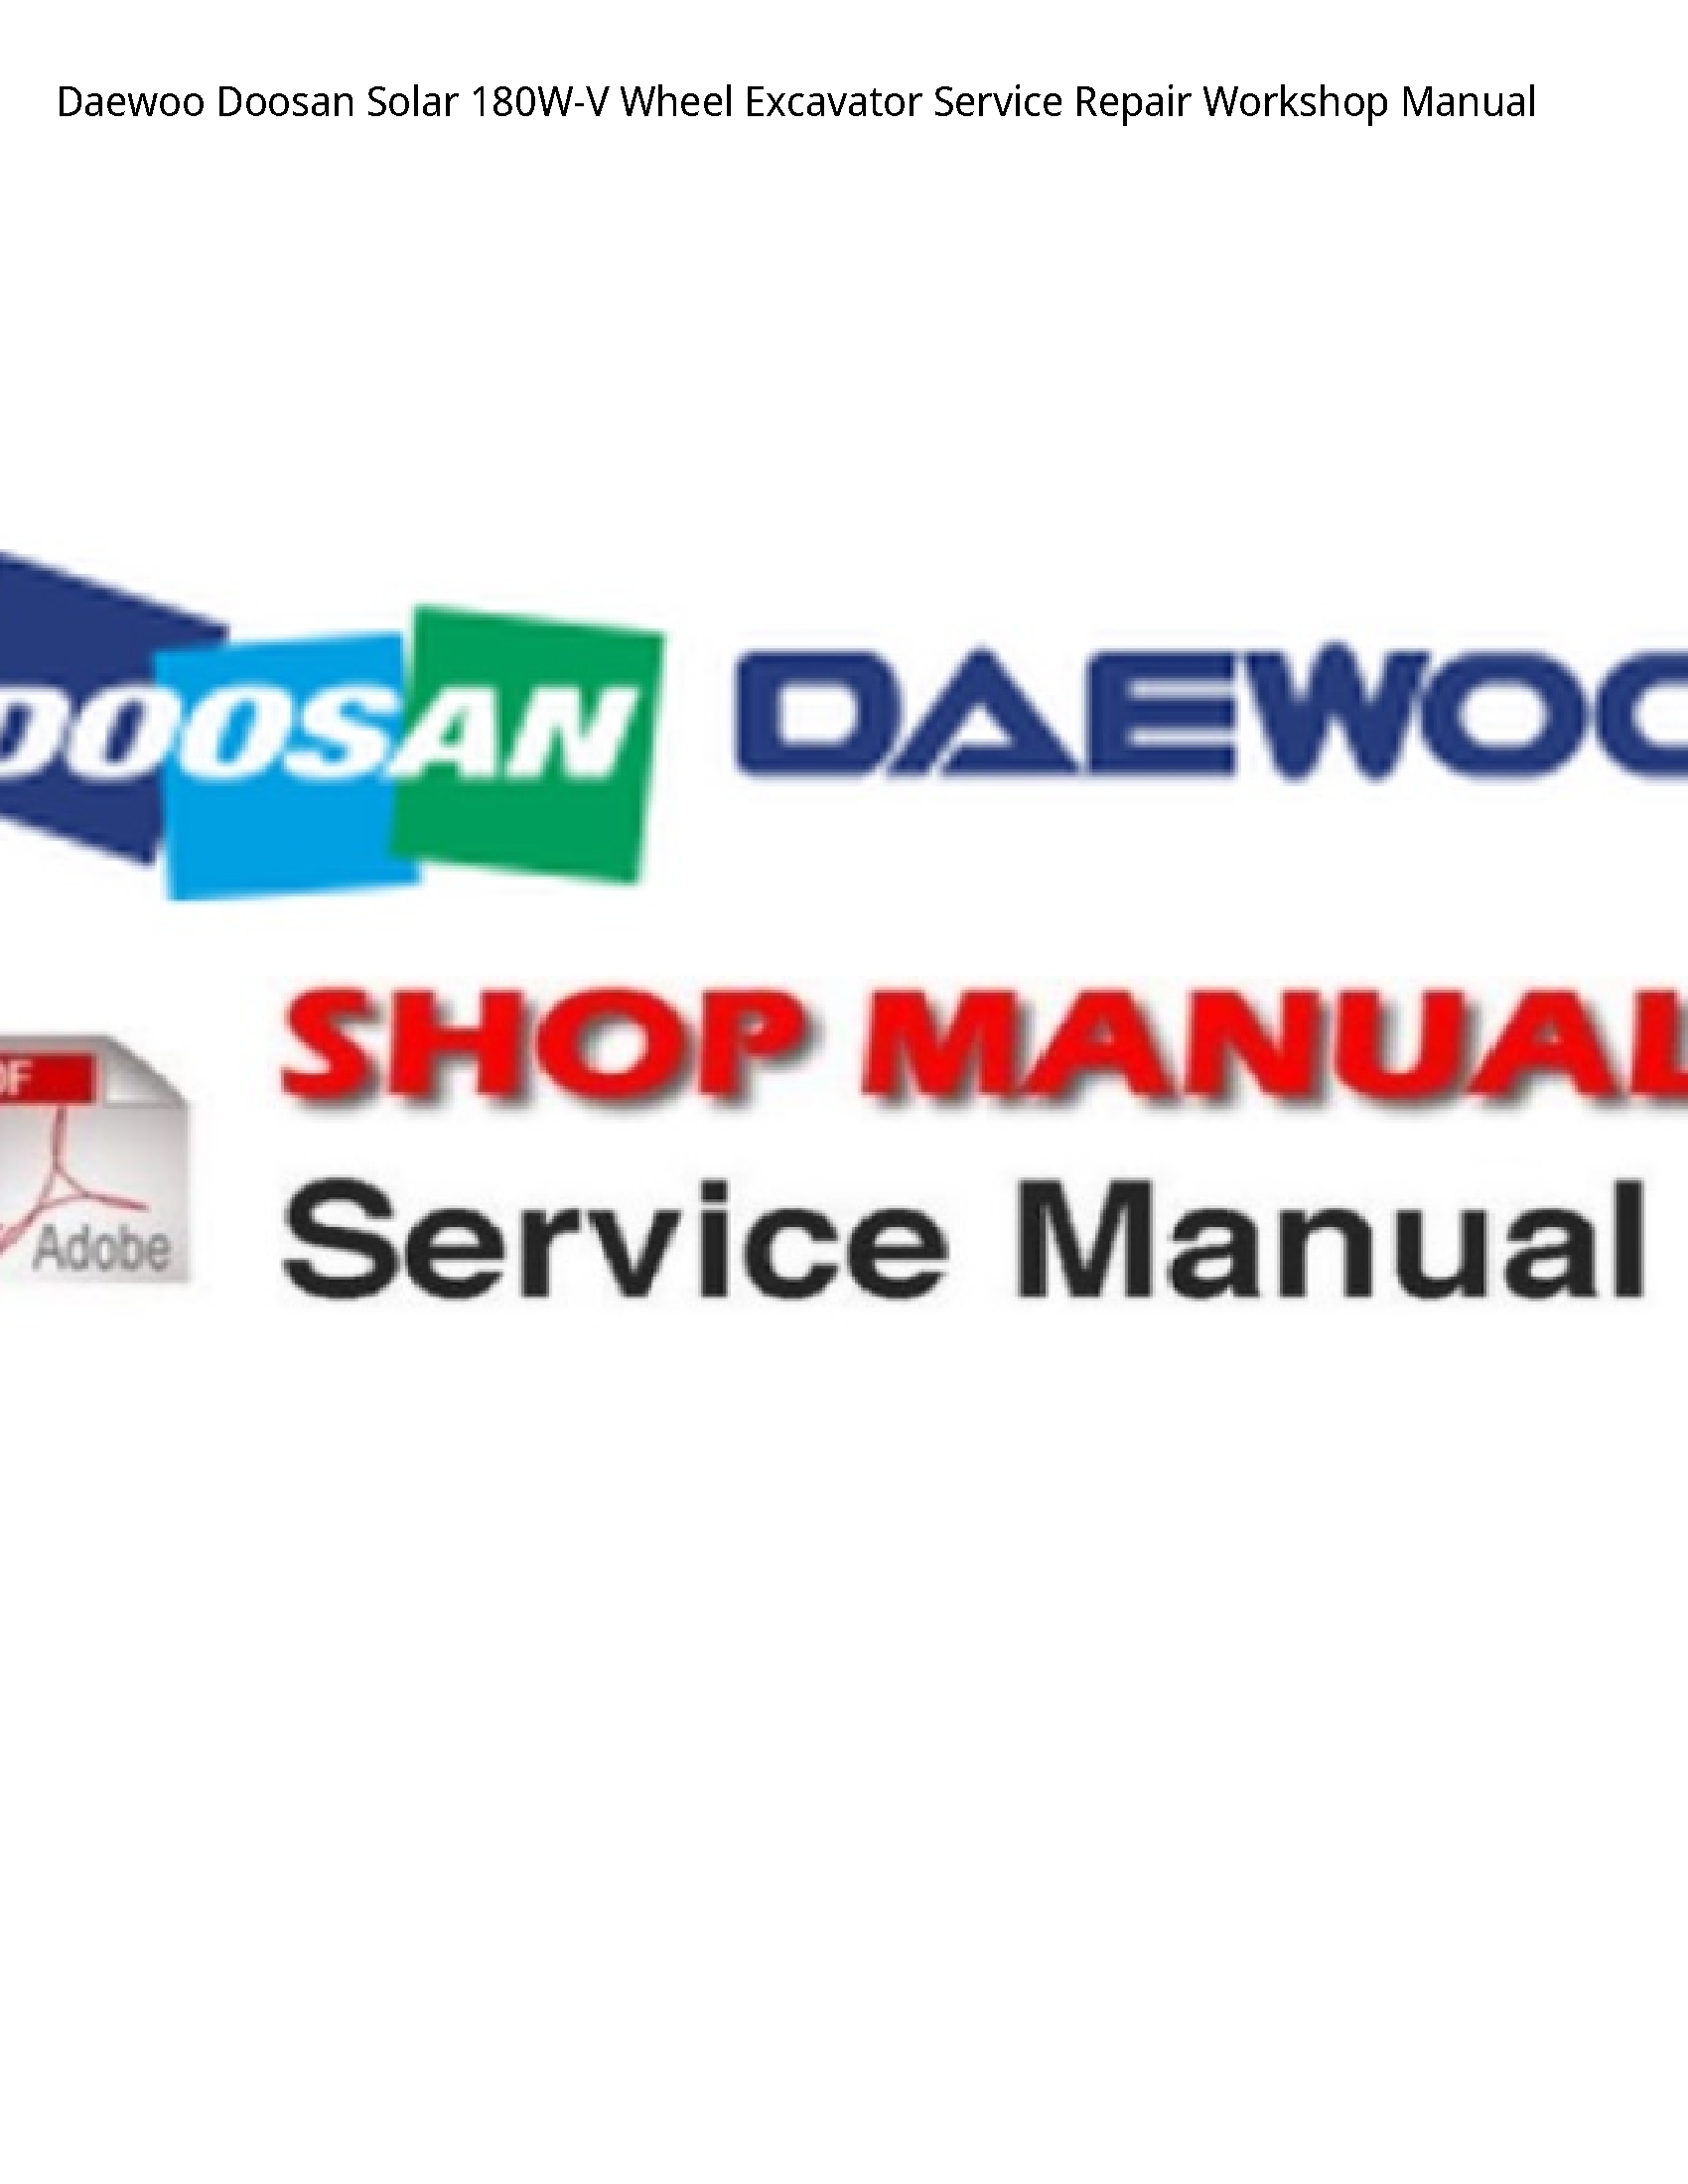 Daewoo Doosan 180W-V Solar Wheel Excavator manual